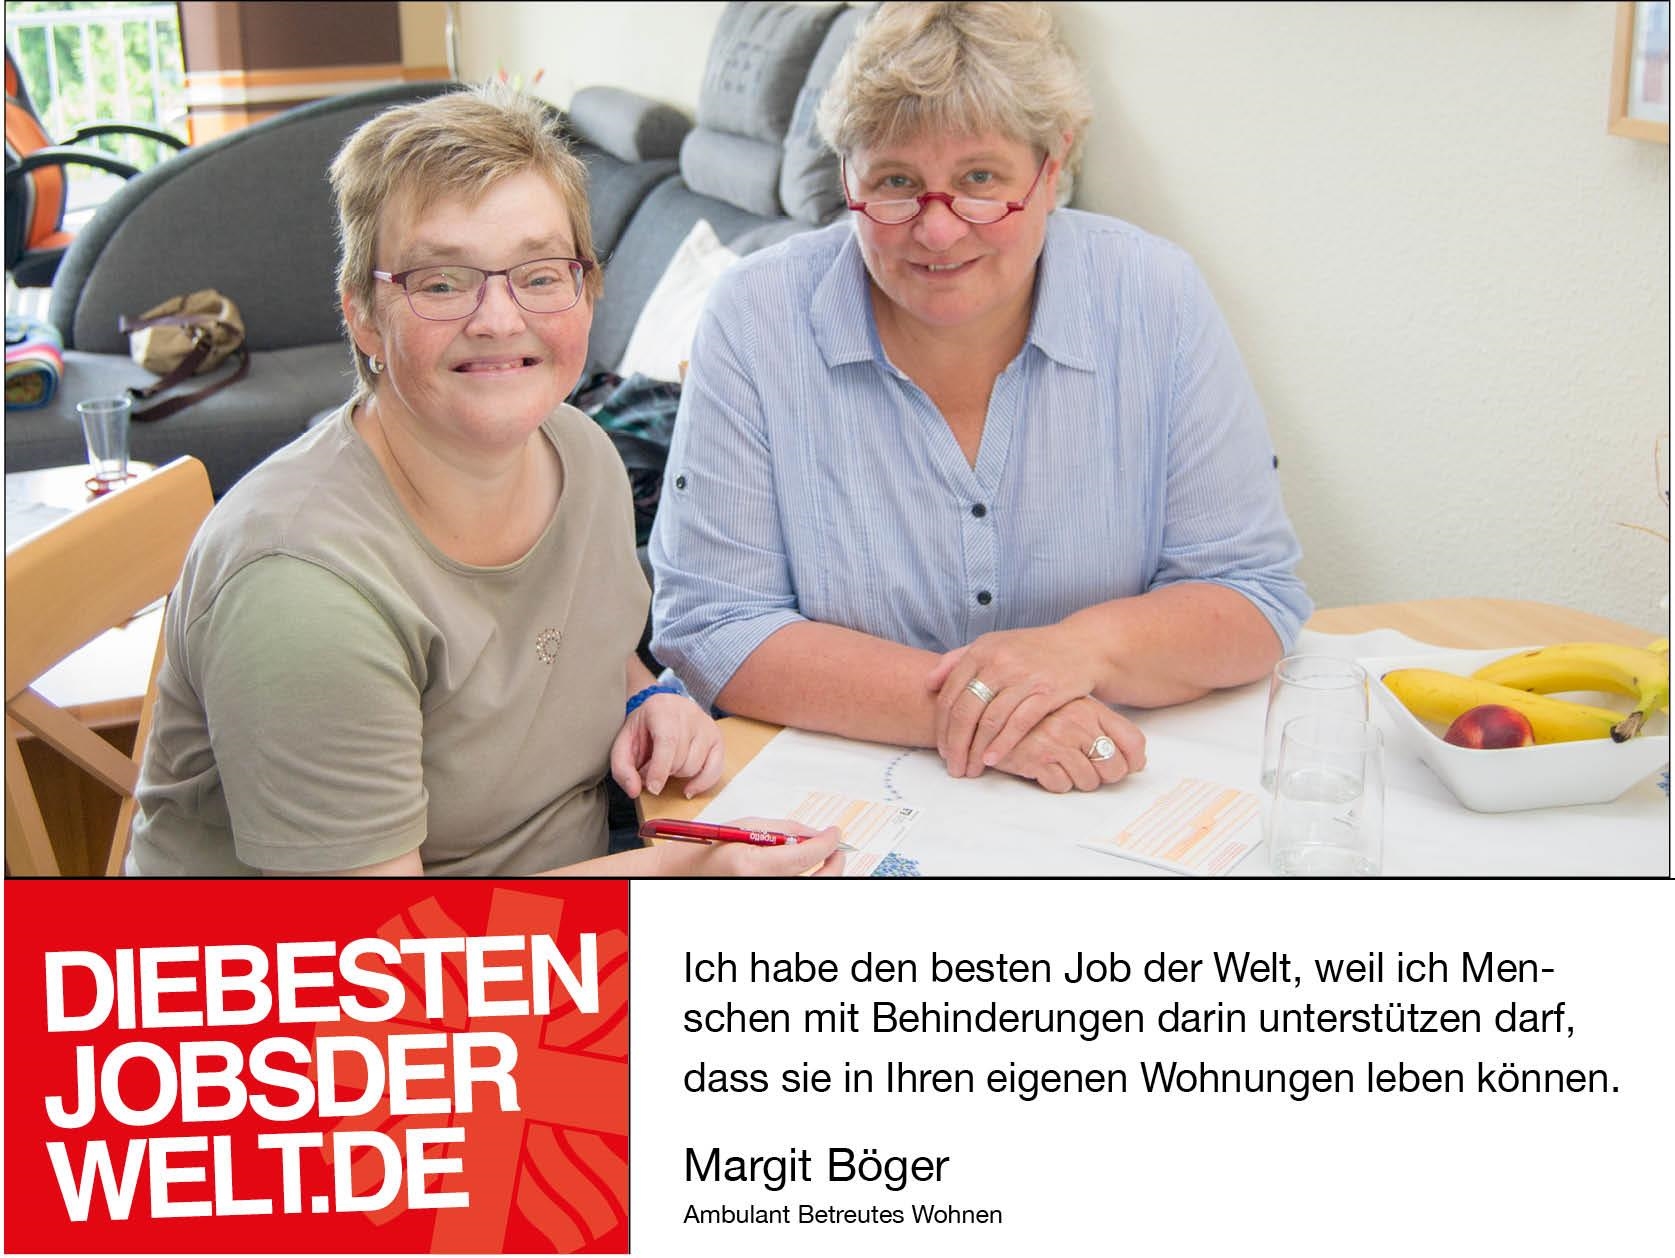 diebestenjobsderwelt - Margit Böger (Foto: Miriam Konietzny)